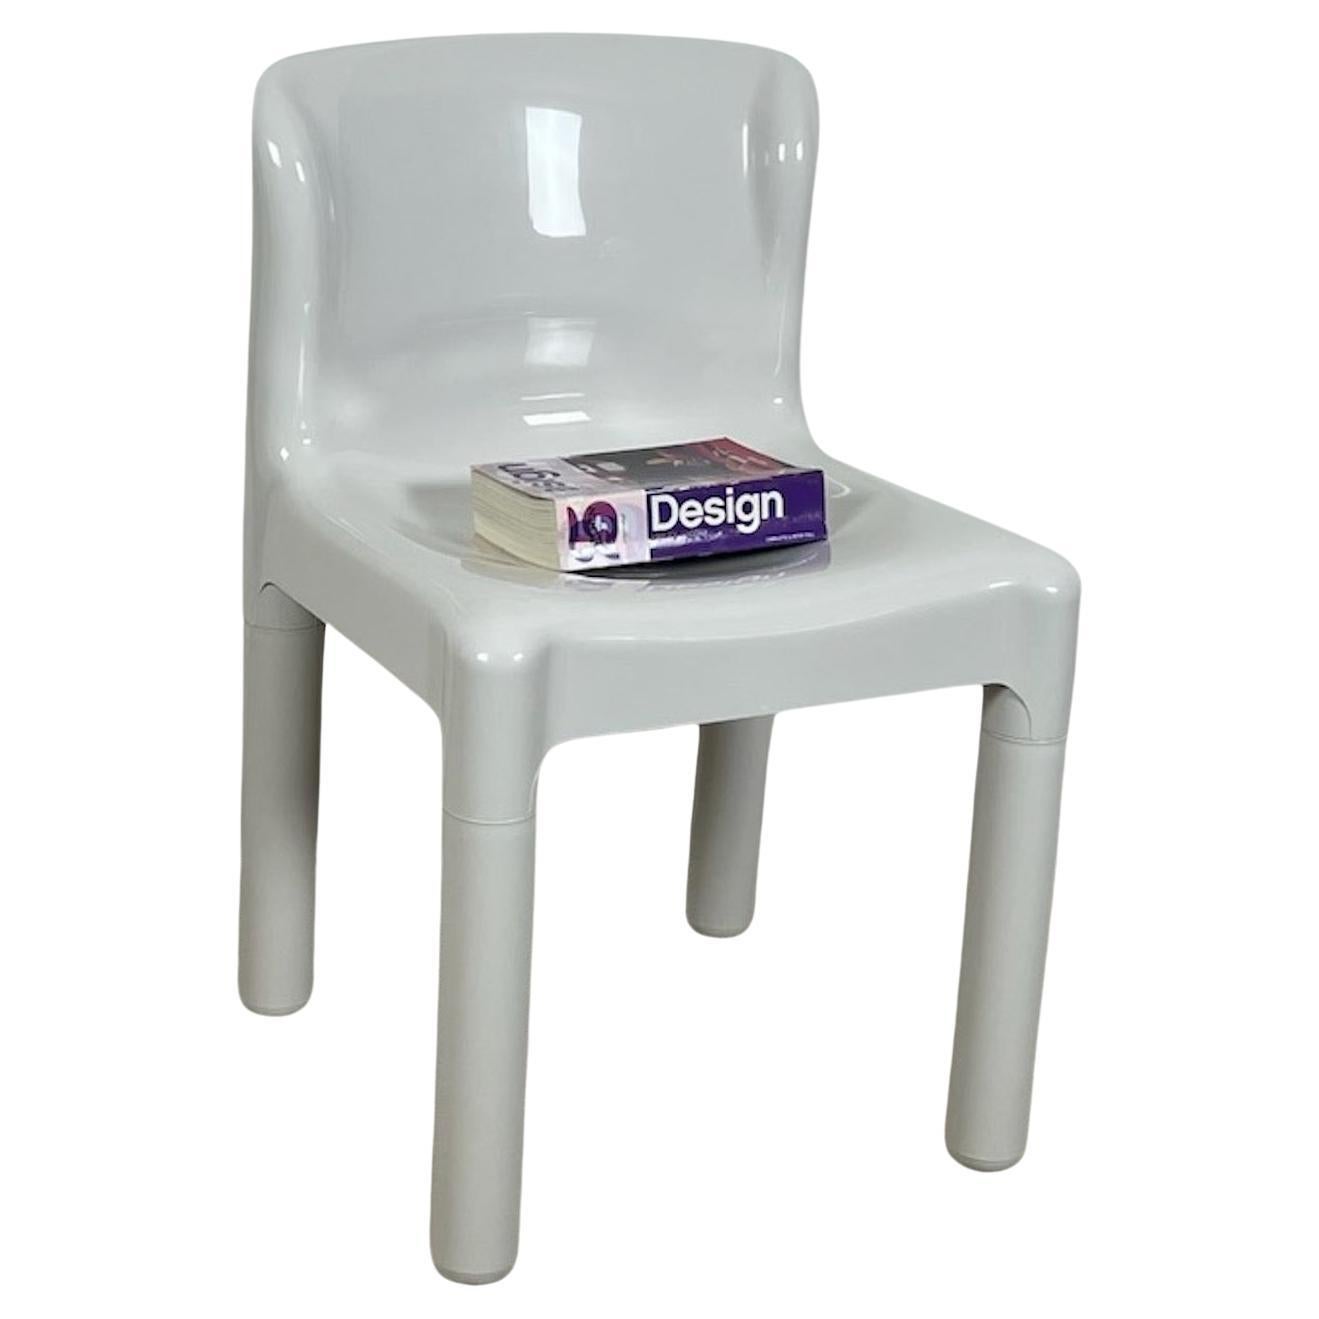 La chaise modèle 4875 est la première chaise au monde fabriquée en polypropylène moulé par injection. Carlo Bartoli l'a dessinée en 1970, Kartell en a commencé la production en 1974 et la chaise a connu un énorme succès dans le monde entier pour son